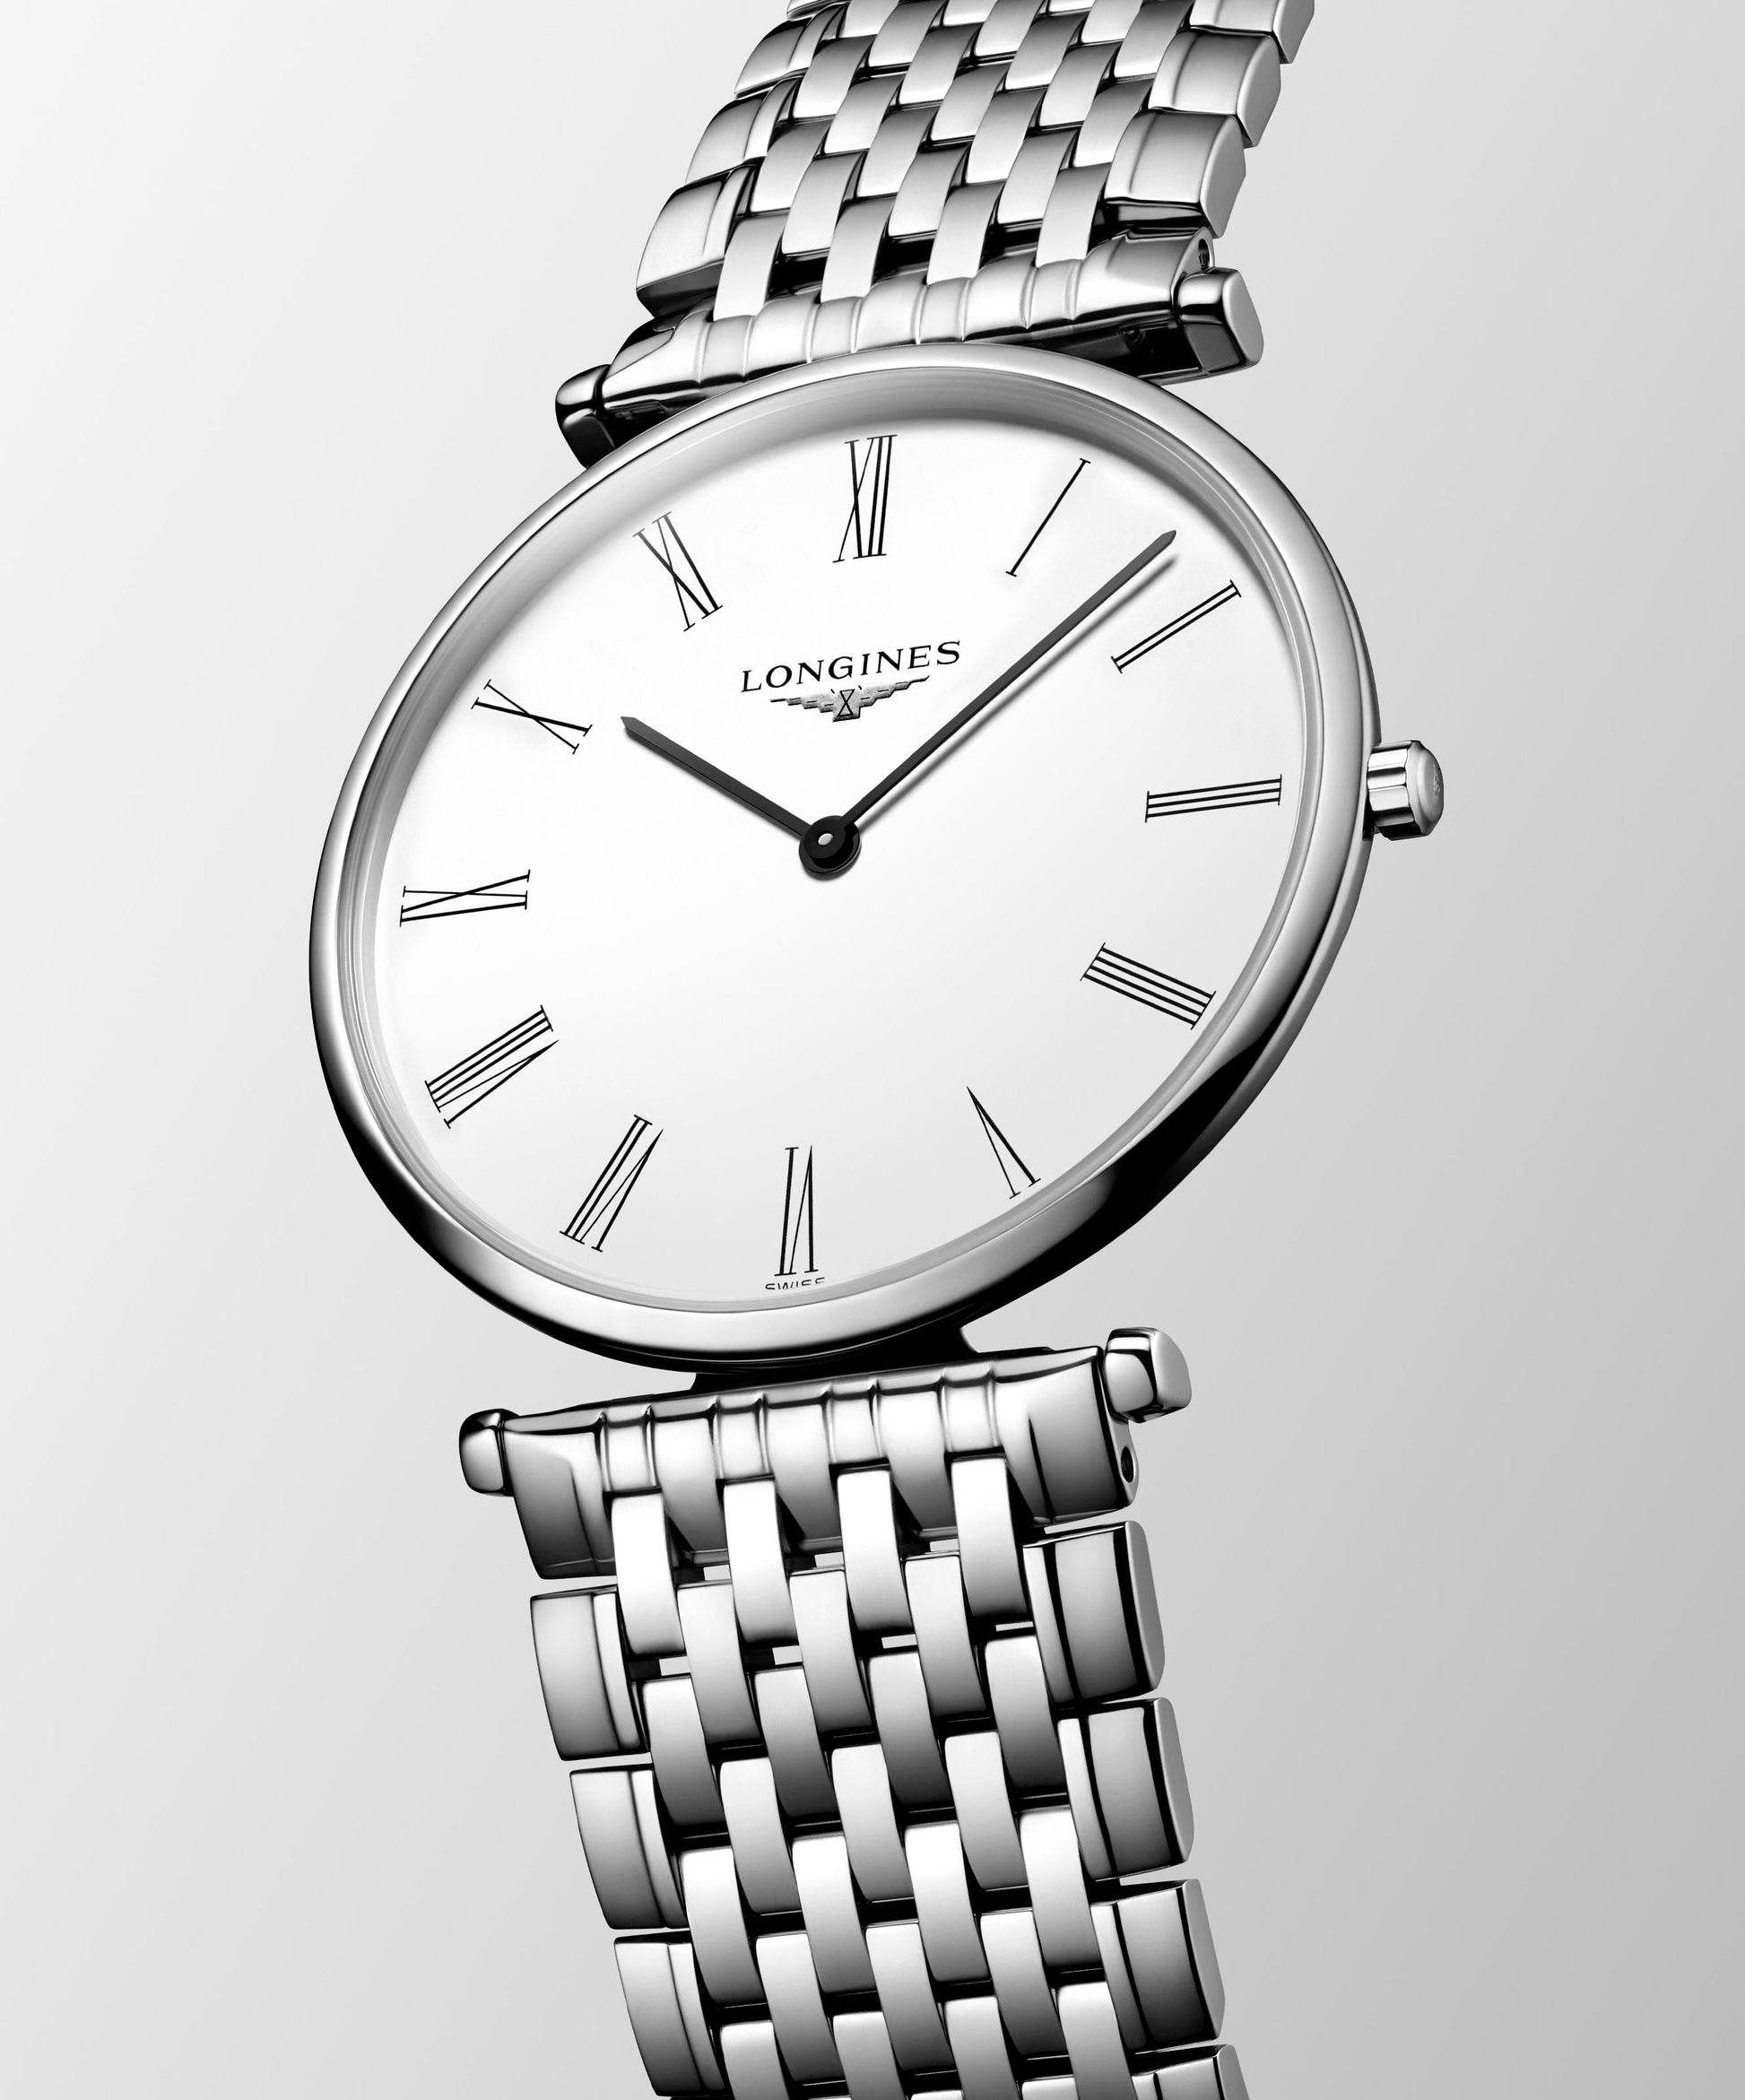 Longines La Grande Classique De Longines White Dial Silver Mesh Bracelet Watch for Women - L4.755.4.11.6